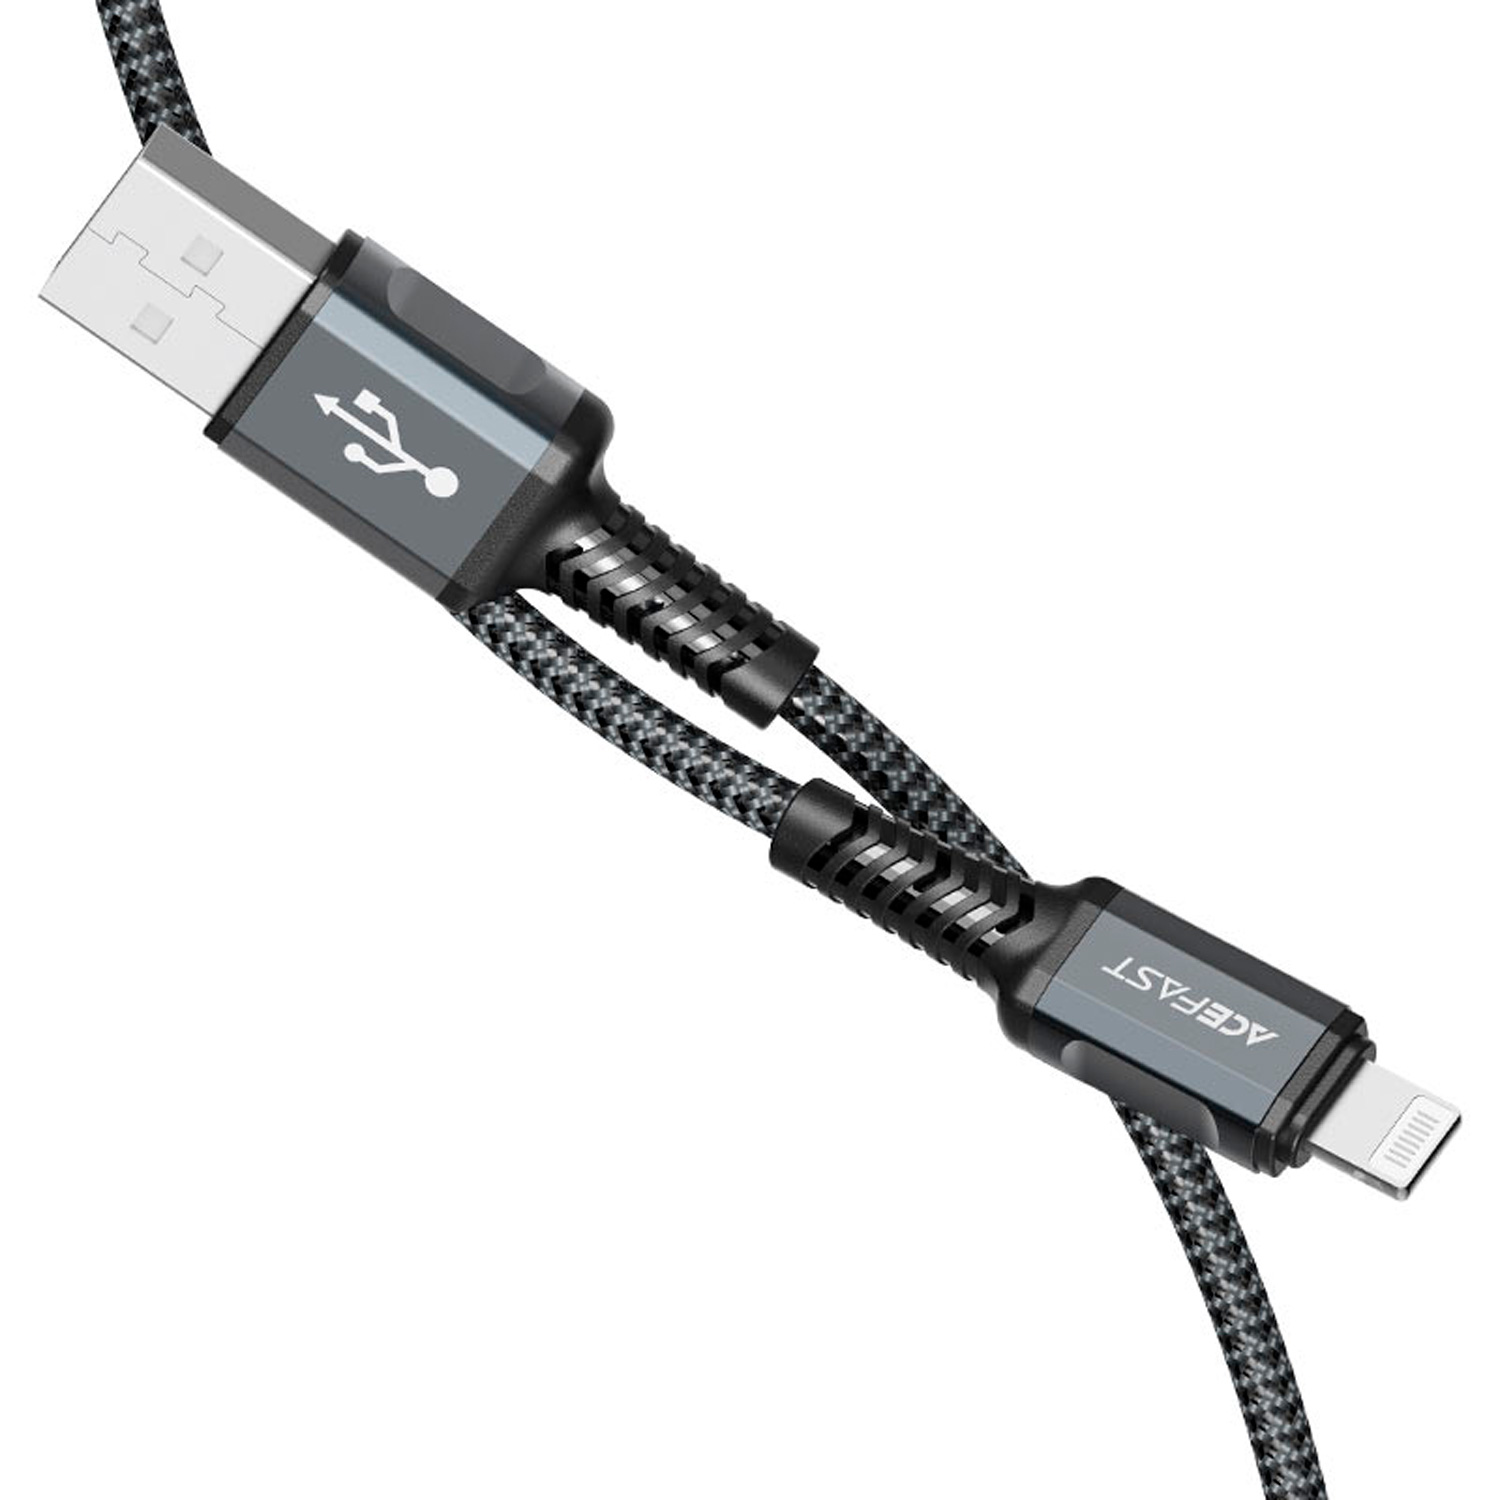 Cabo Acefast C1-02 USB-A para Lightning 1.20 Metros - Preto